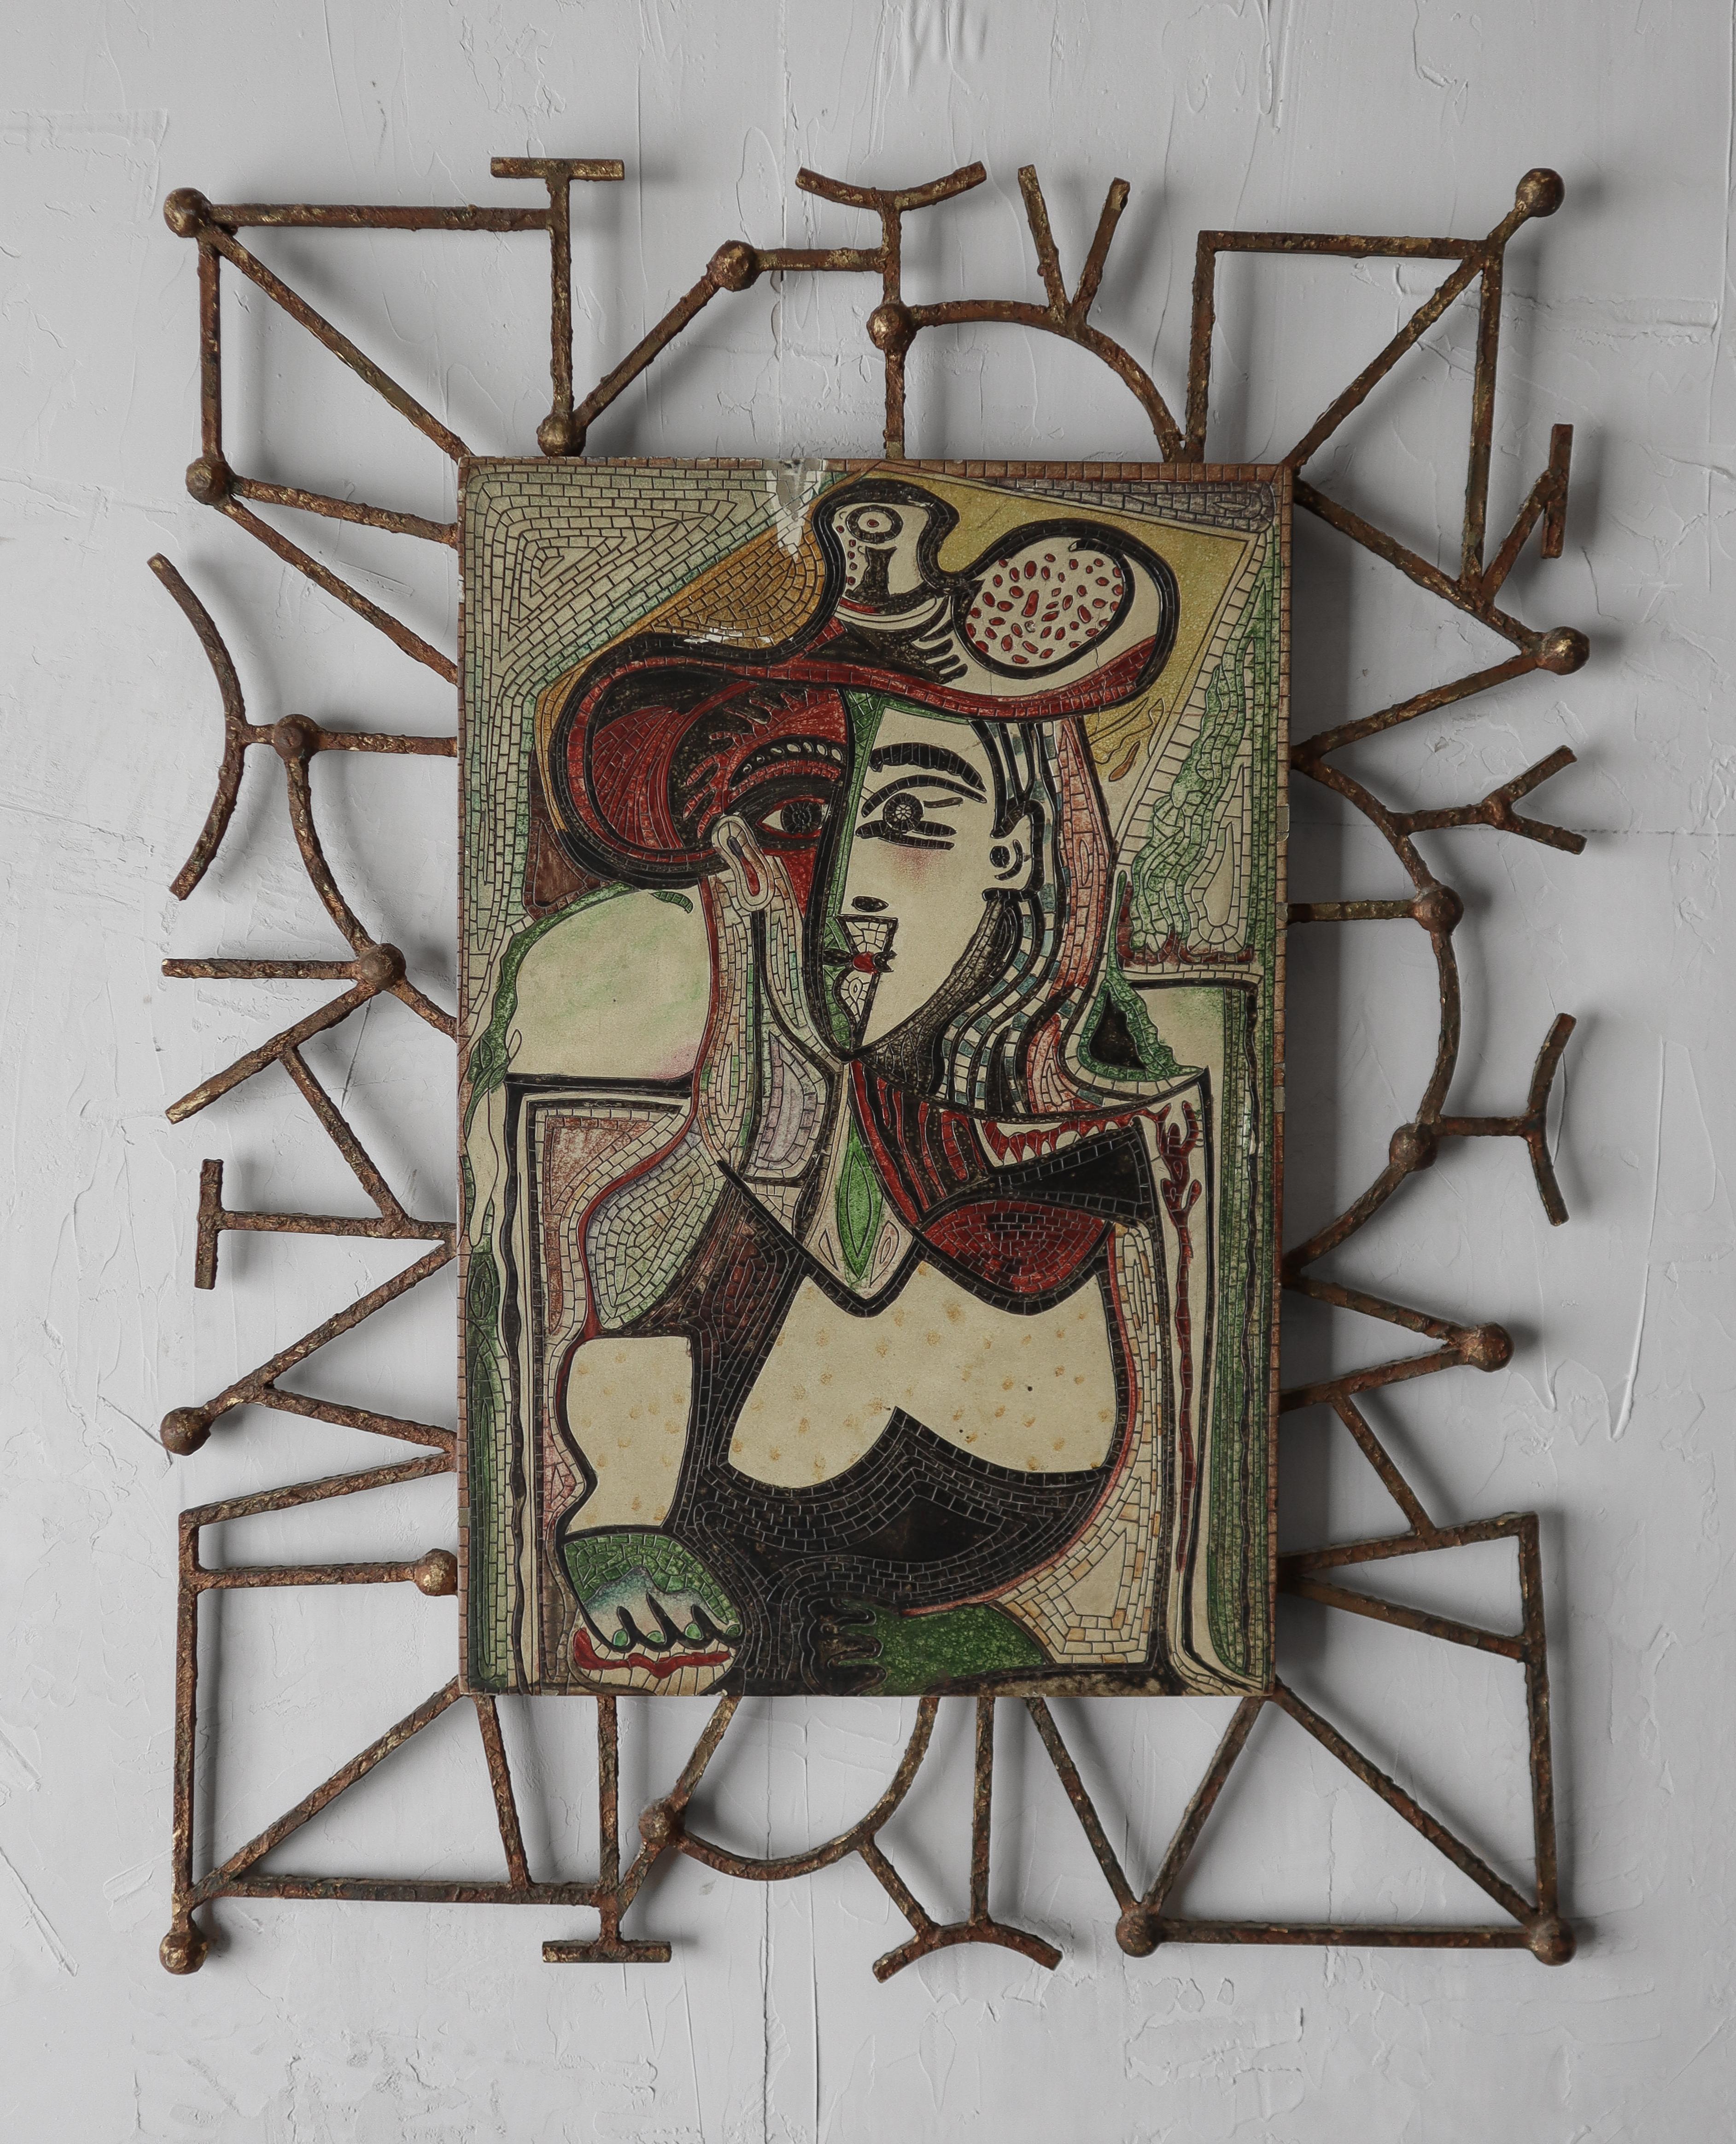 Œuvre d'art unique d'après Pablo Picasso, Femme au grand chapeau.  

Grand carreau de céramique, sculpté et peint pour ressembler à une mosaïque, monté dans un cadre métallique de style brutaliste.

*2ème pièce plus petite également disponible, voir